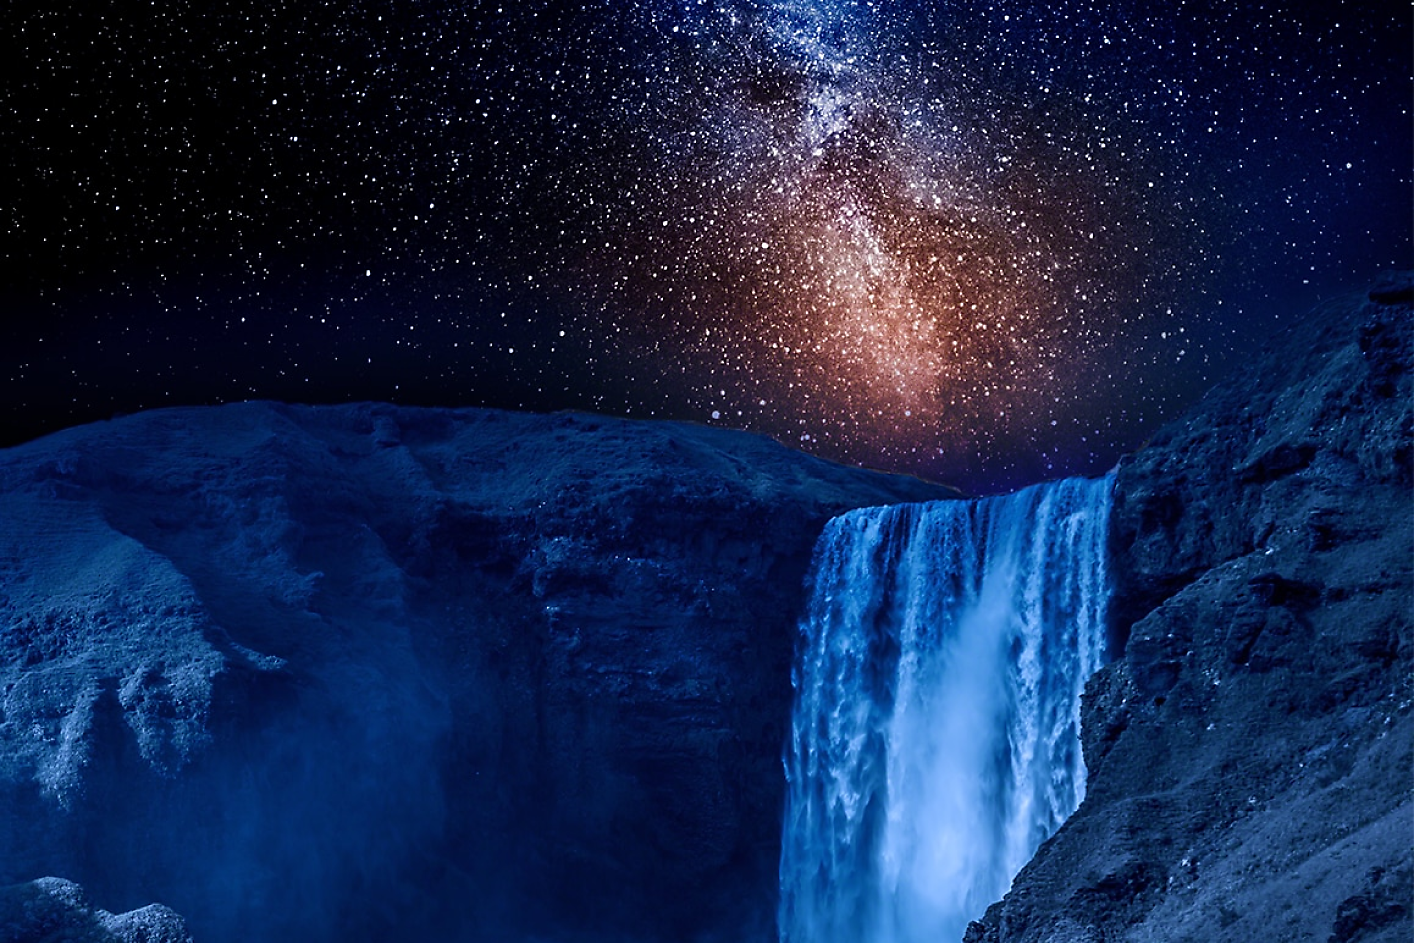 Fone matomas tamsiai mėlyno krioklio su žvaigždėtu nakties dangumi vaizdas